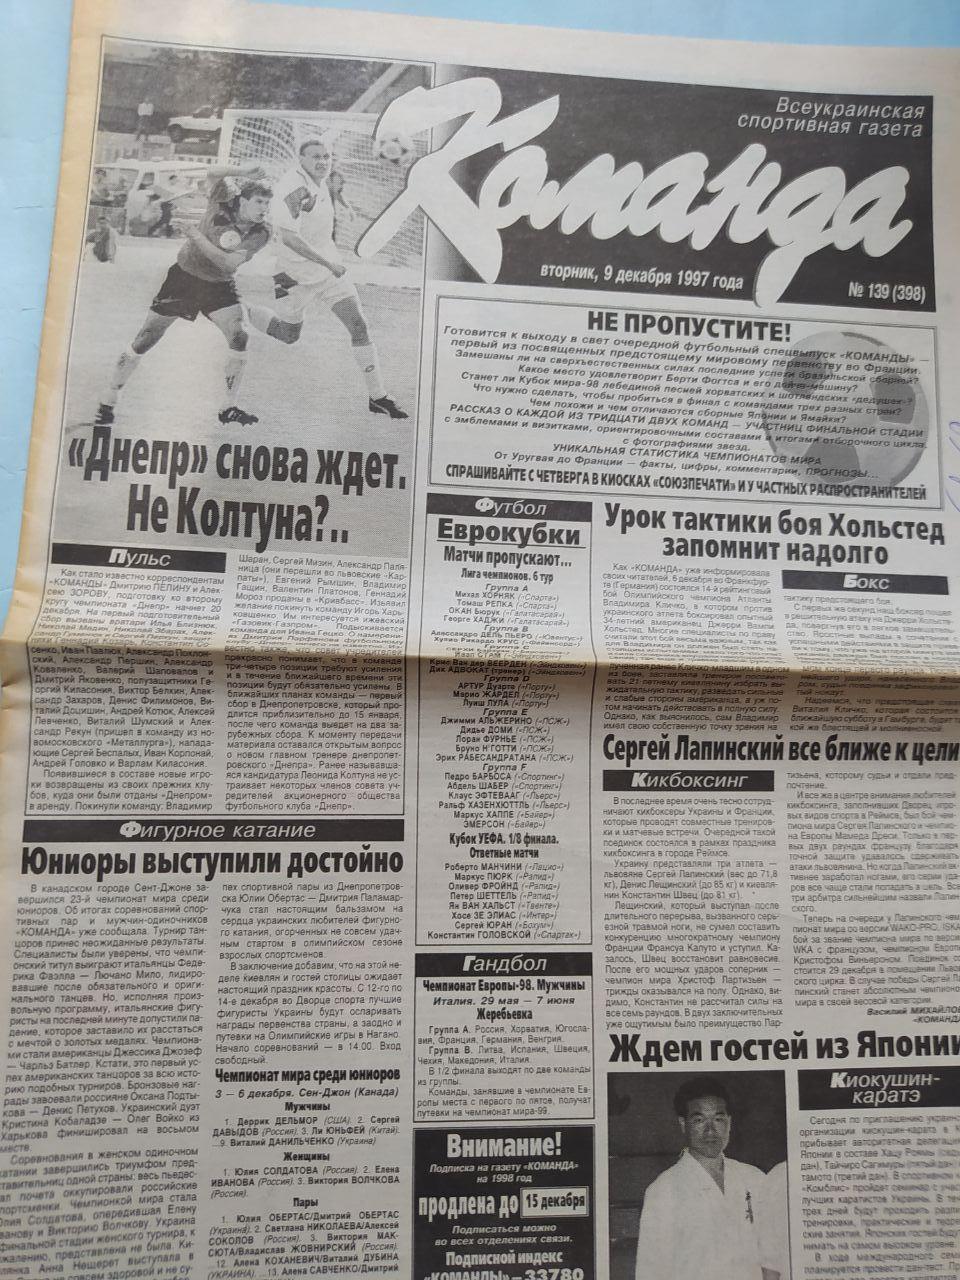 Газета Команда Всеукраинская спортивная газета № 139 за 1997 год